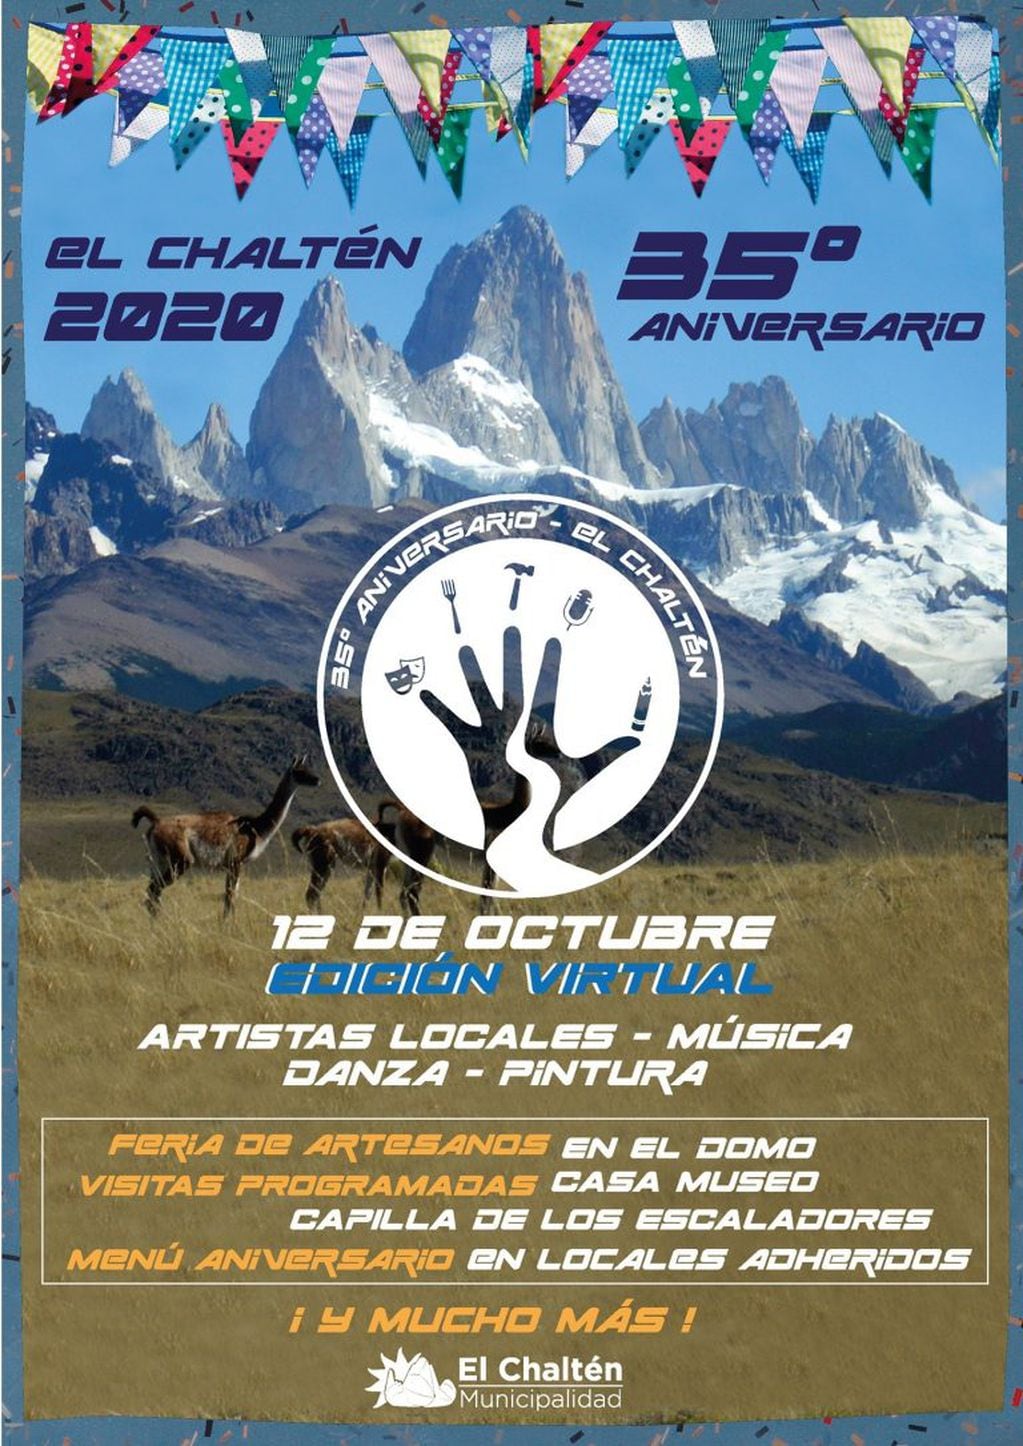 El 12 de octubre, El Chaltén celebra sus 35 años.